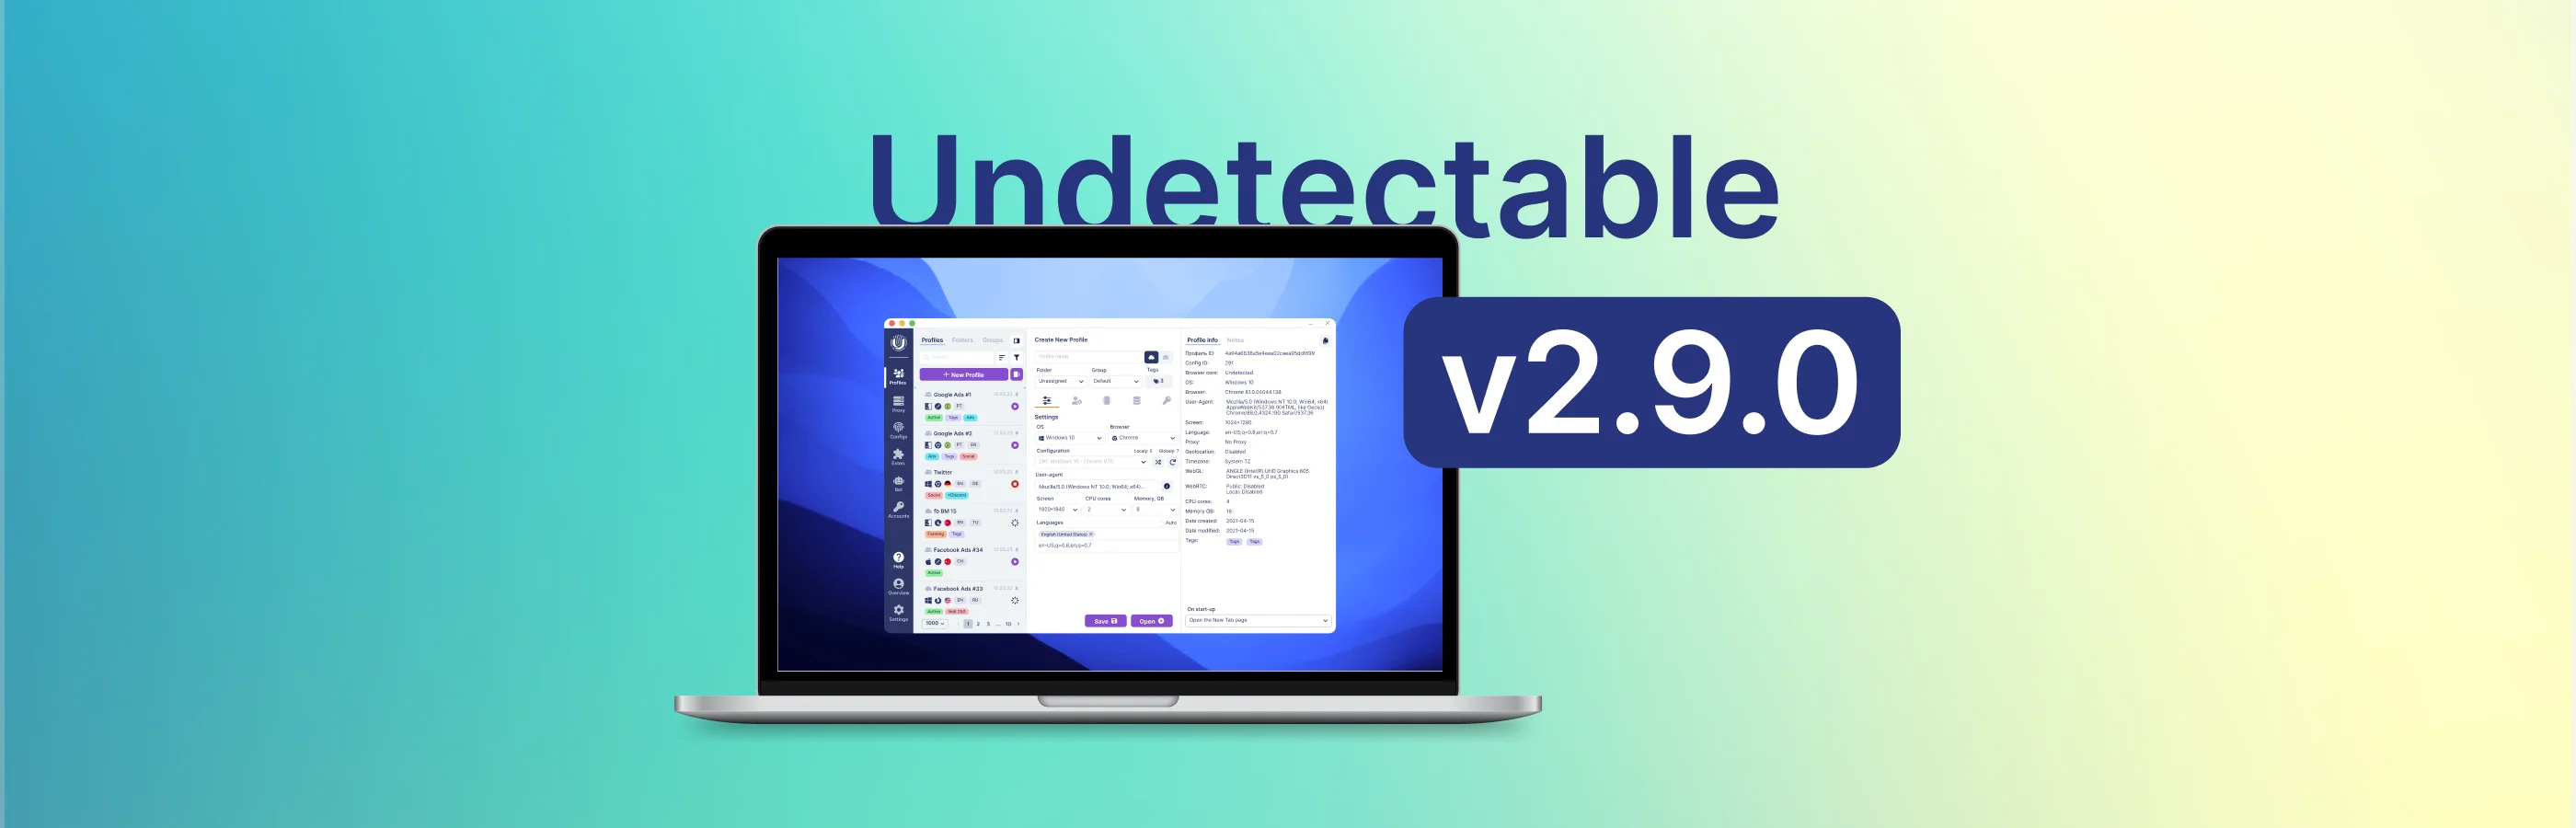 Aktualisierung des Undetectable Browsers 2.9.0 – Verstärkte API und Funktionen, Verbesserung der Sicherheit